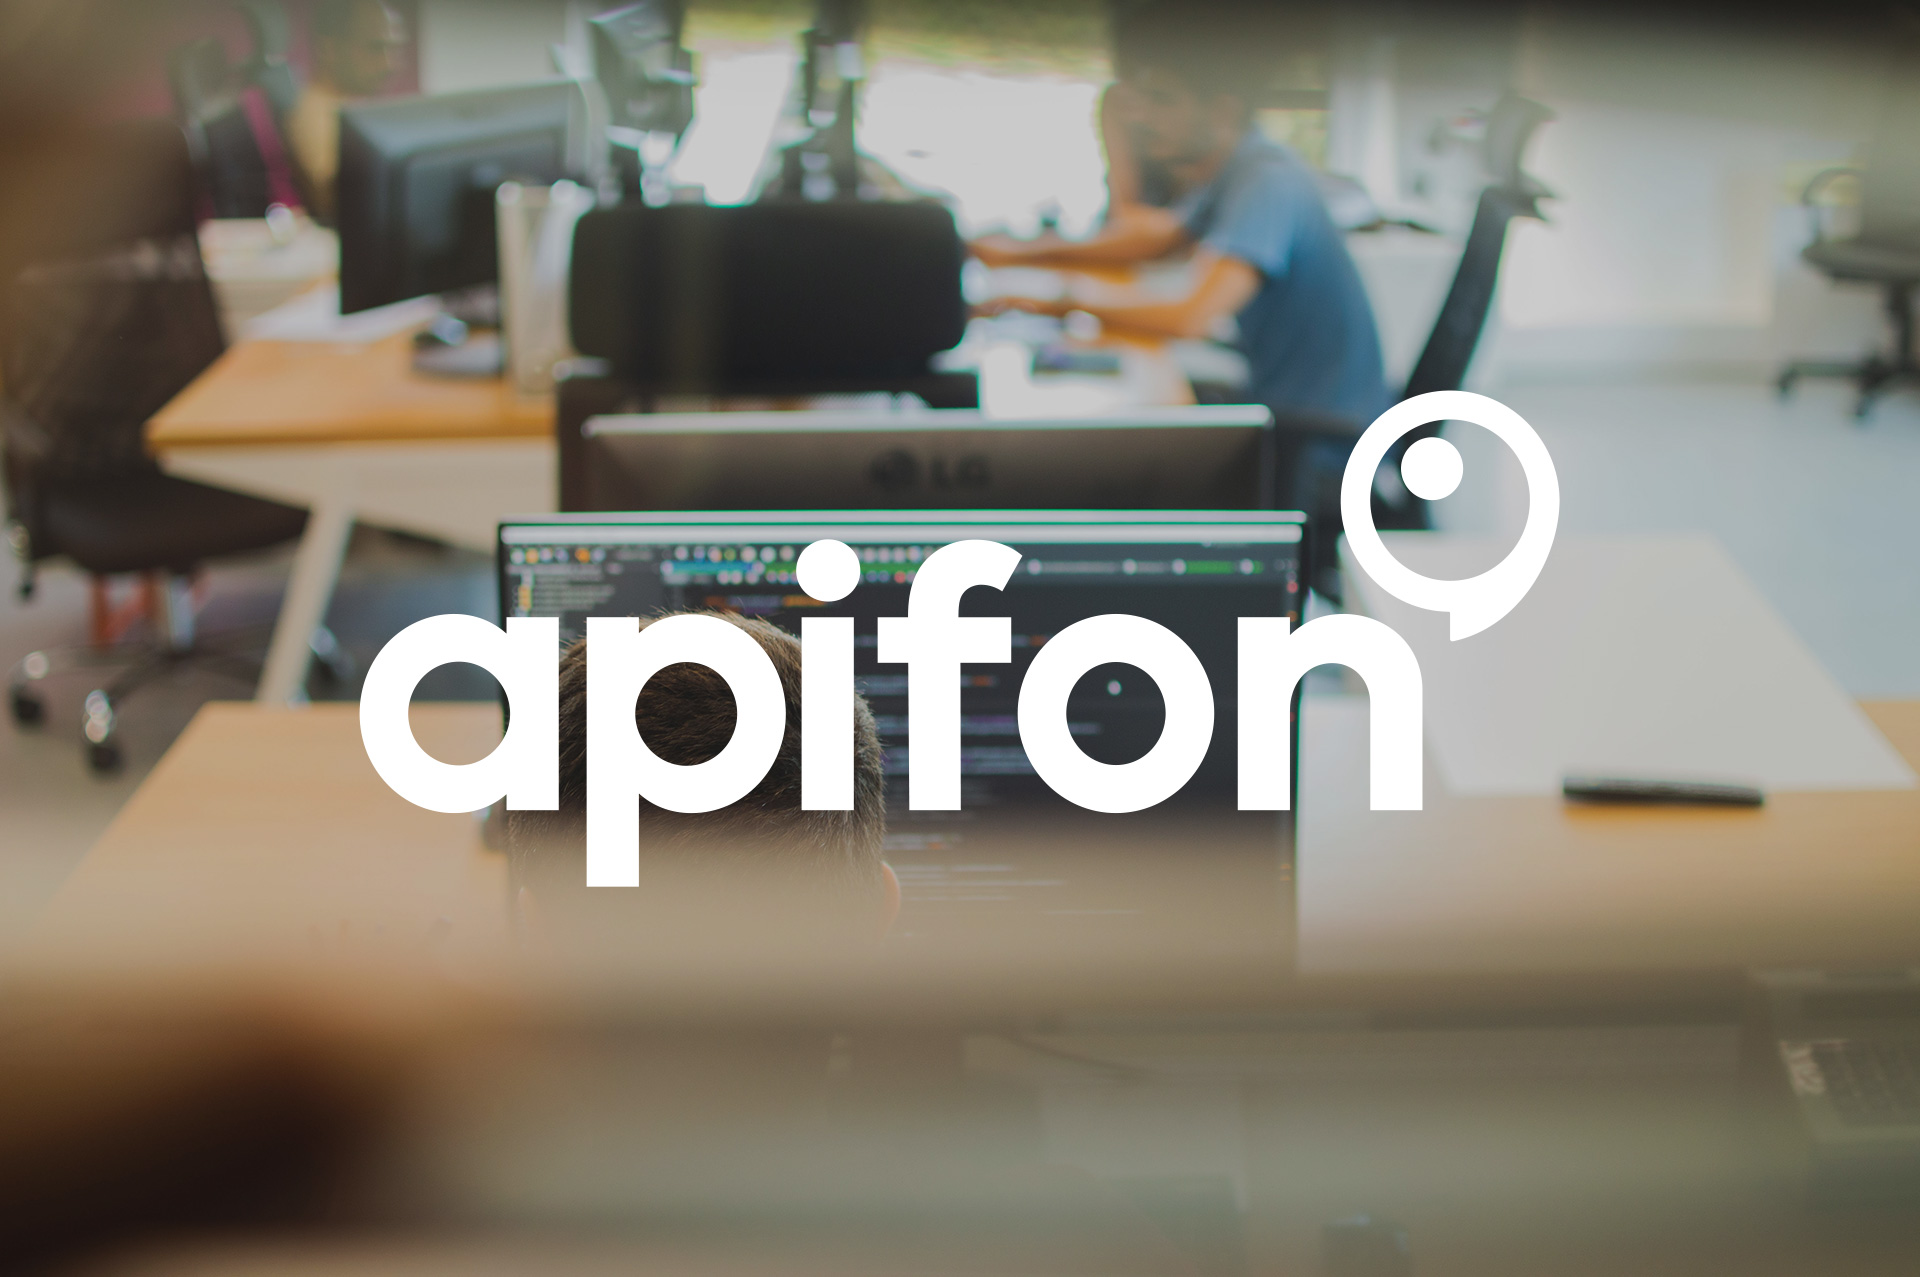 Η Apifon επεκτείνει τη συνεργασία της με τη Microsoft